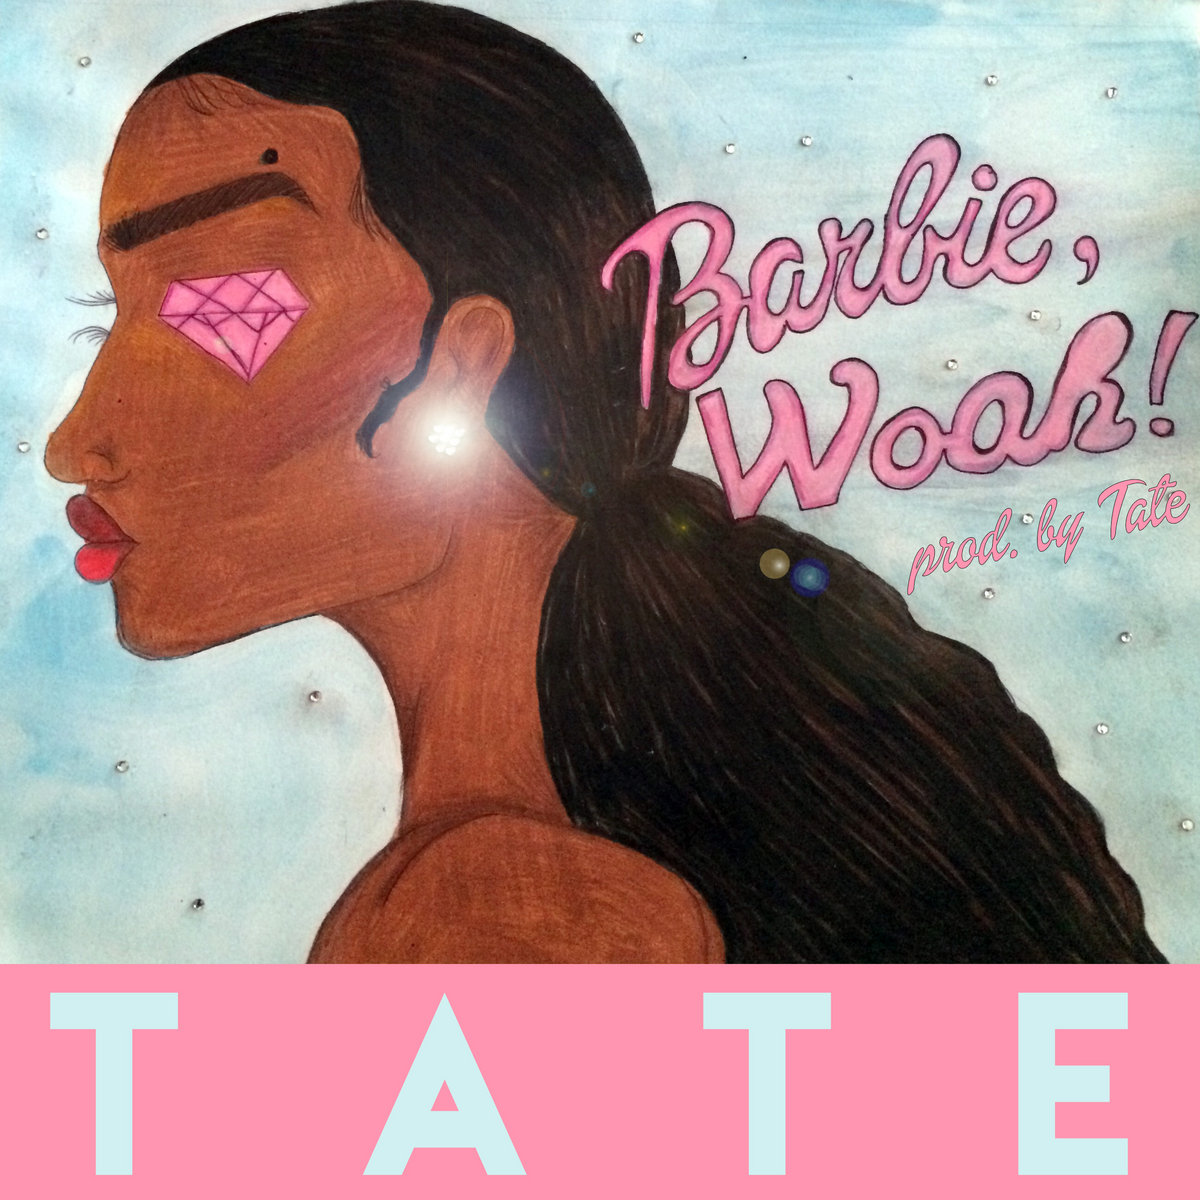 Barbie, Woah! | Yung Baby Tate